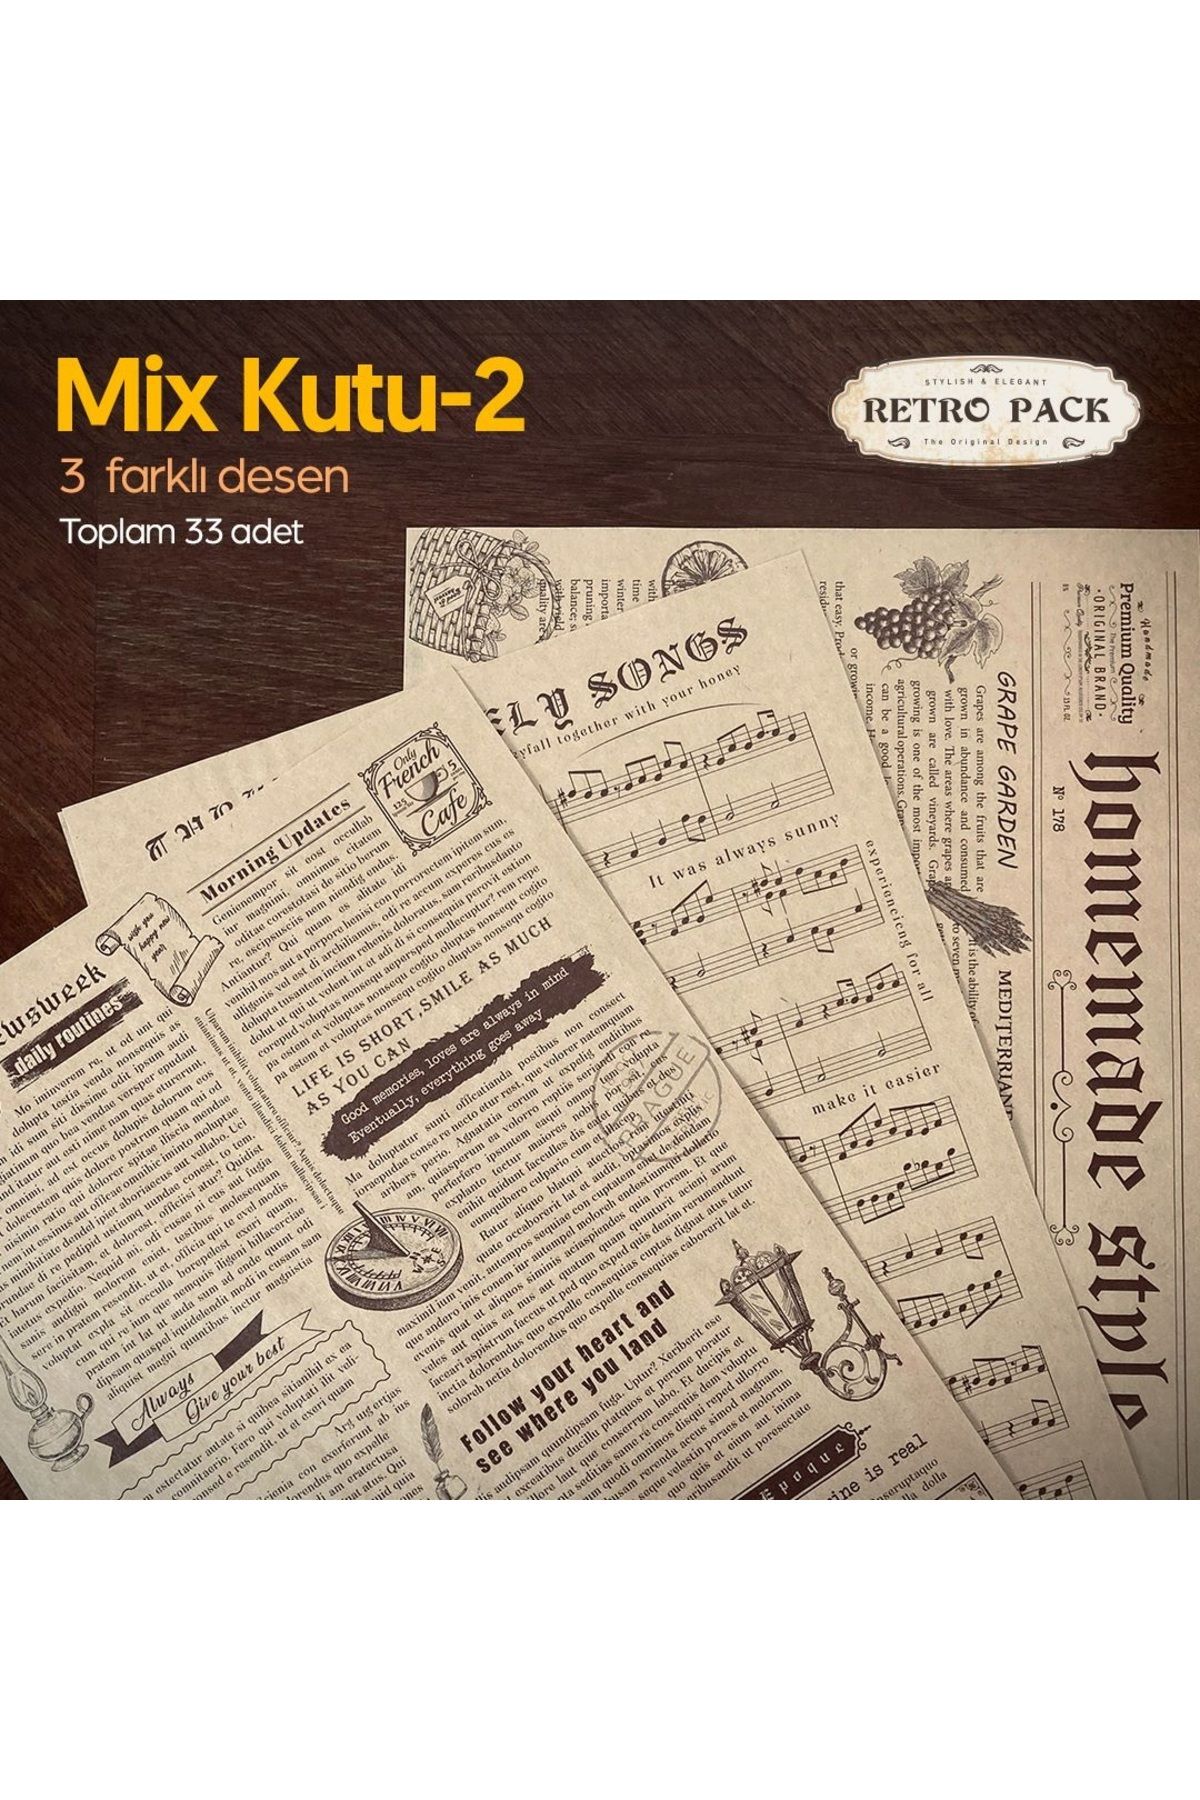 Retro Pack 1 Kutuda 33 Adet Desenli Yağlı Kağıt-3 Farklı Desen-mix Kutu 2-sunum Kağıdı-vintage Sunum Kağıdı